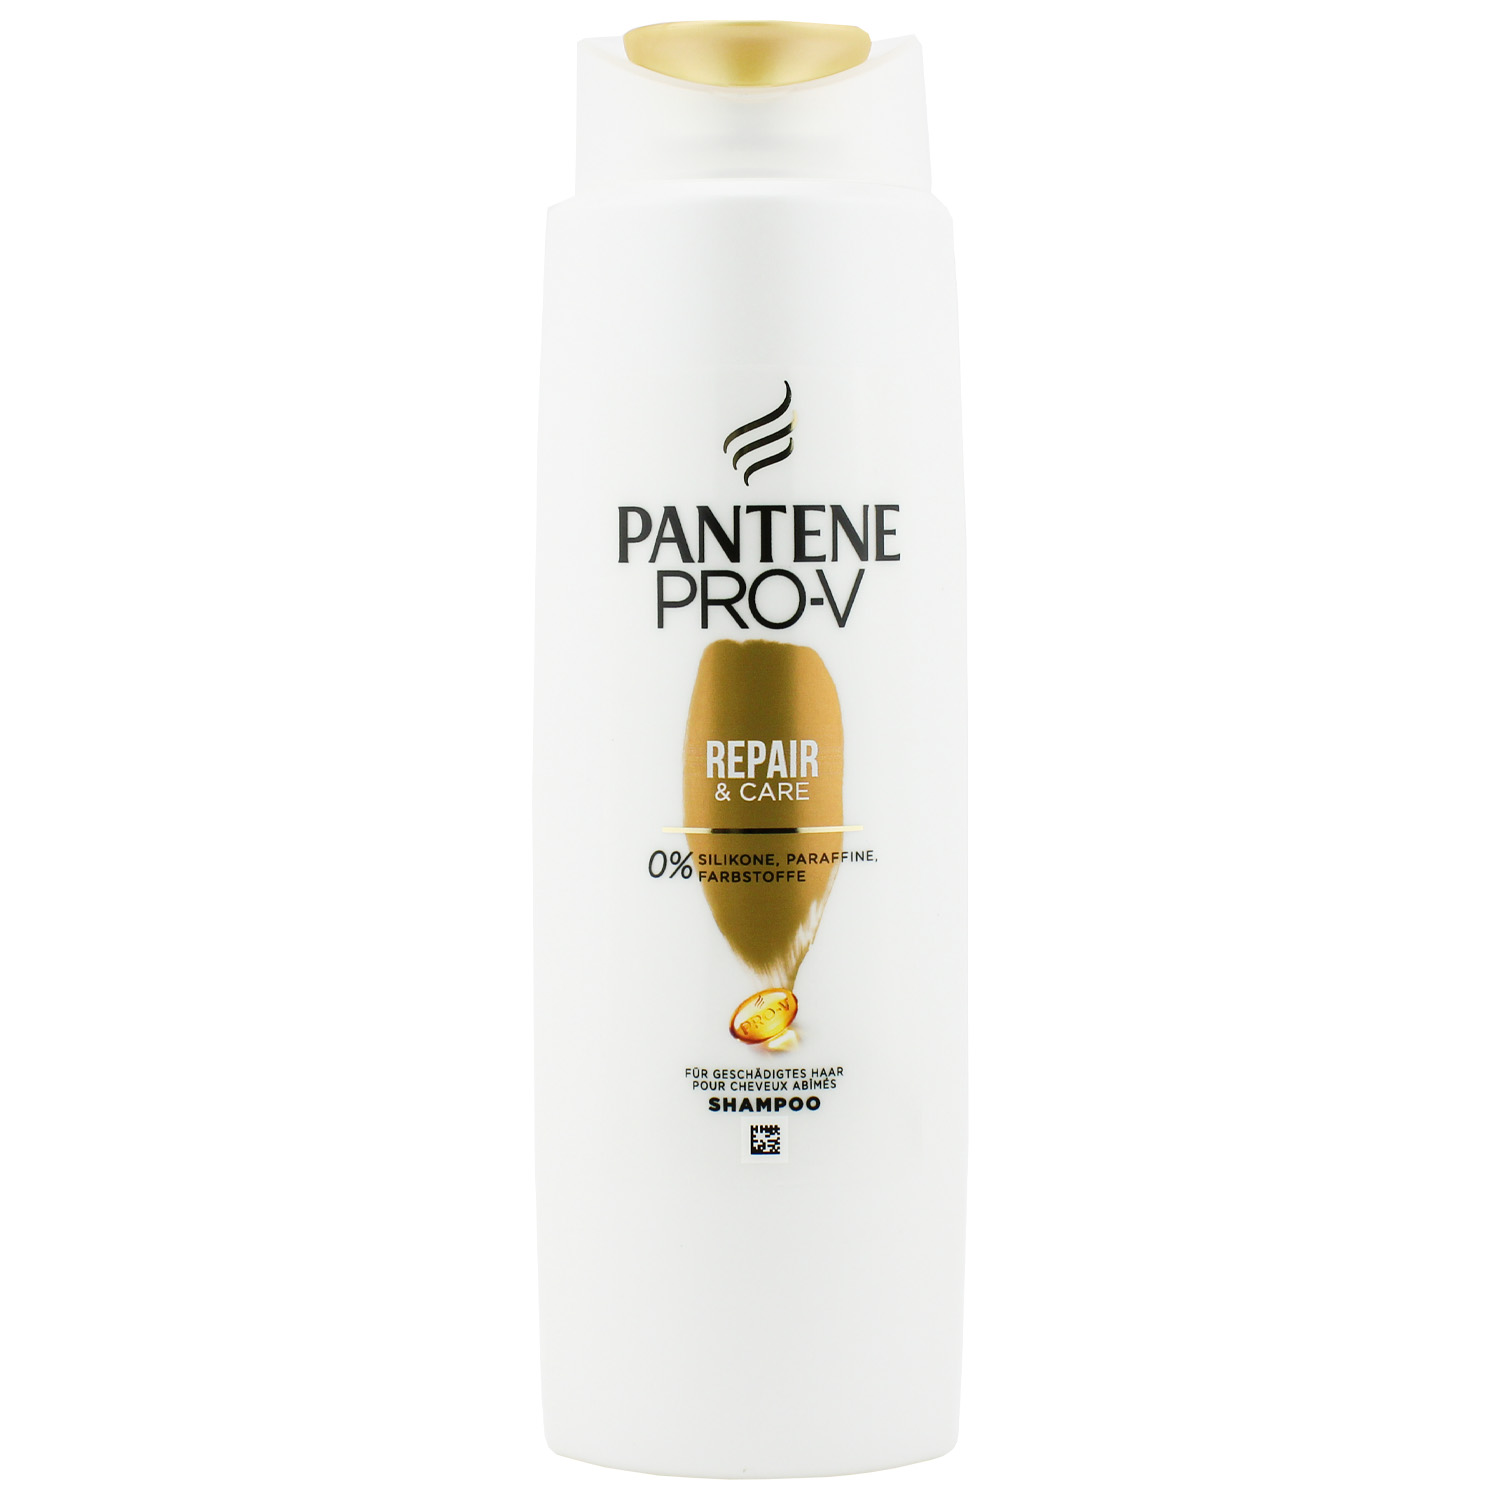 Pantene Pro-V Repair & Care Shampoo 300ml